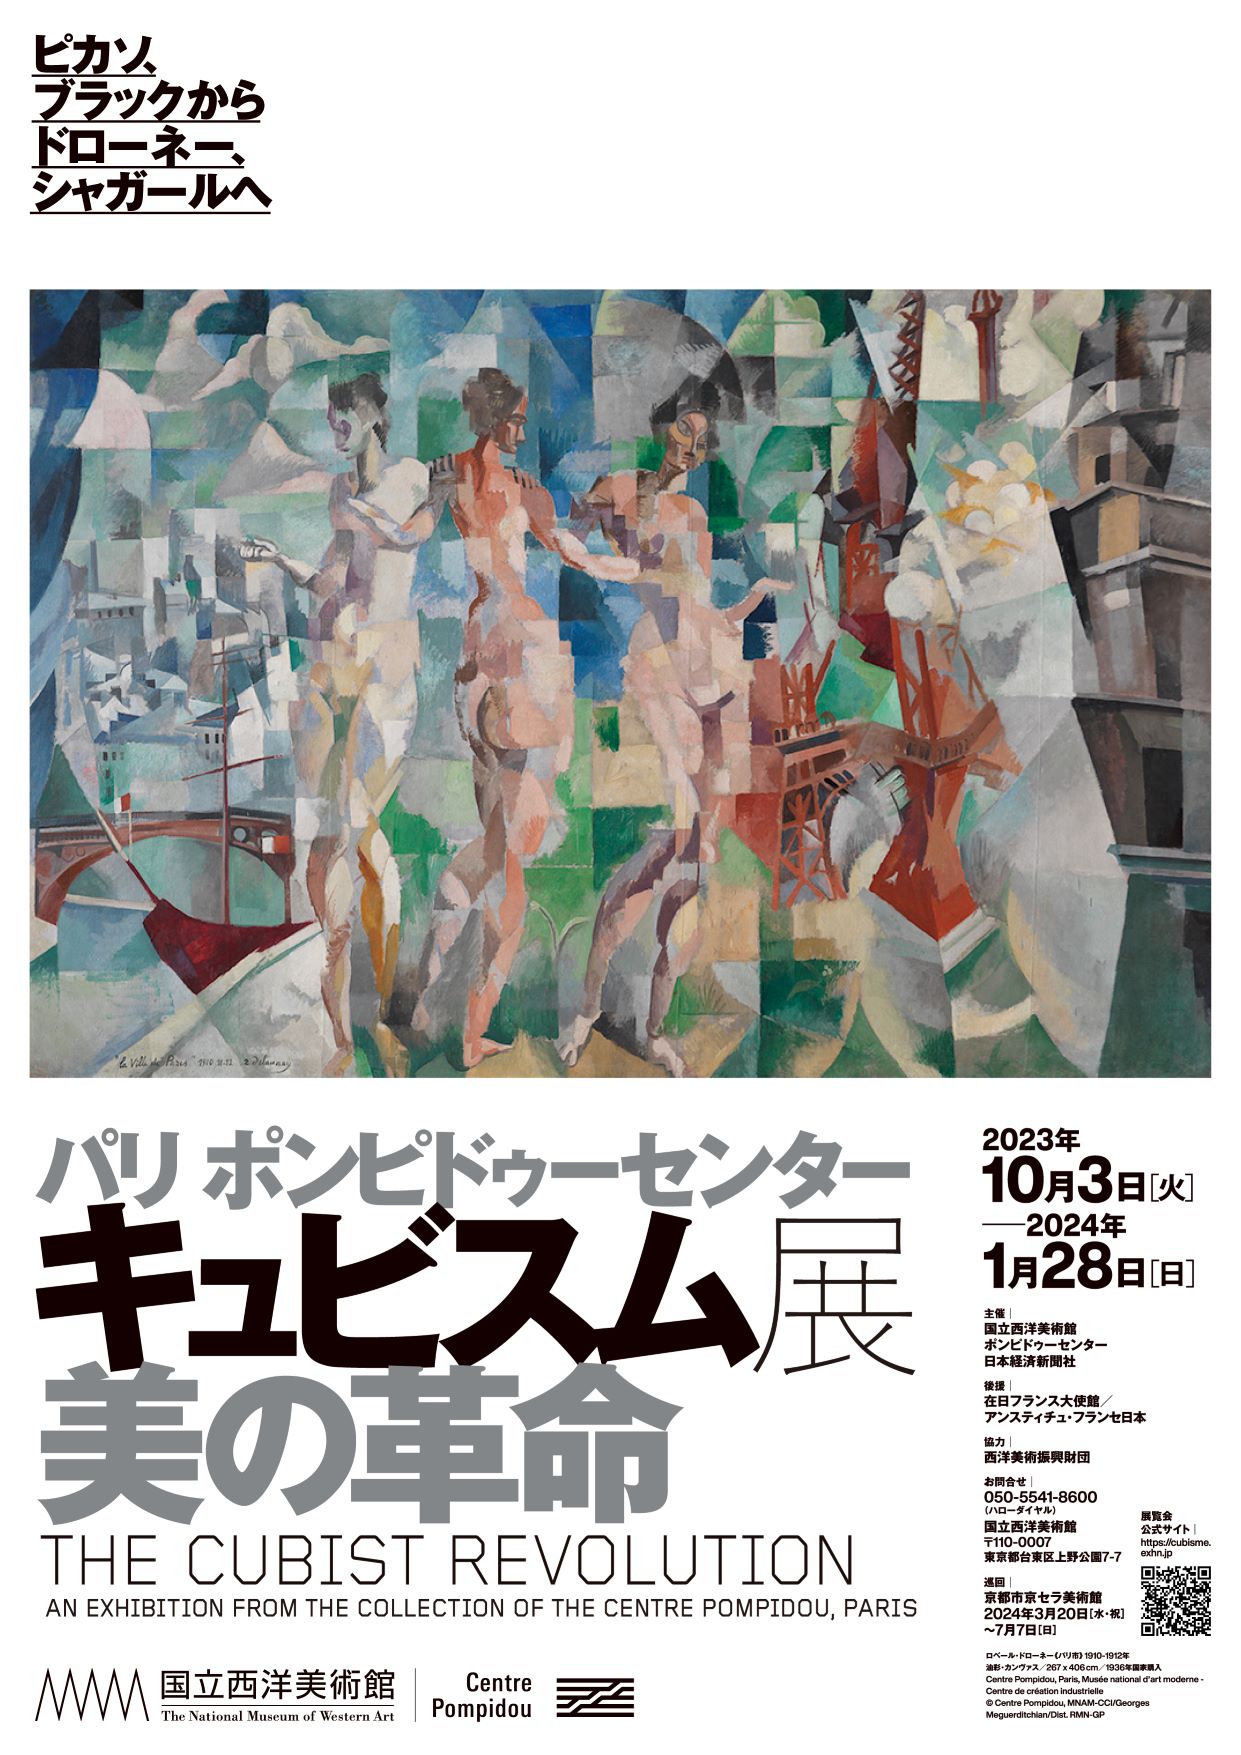 【講演会】<br>田中正之「キュビスムと20世紀美術」の画像